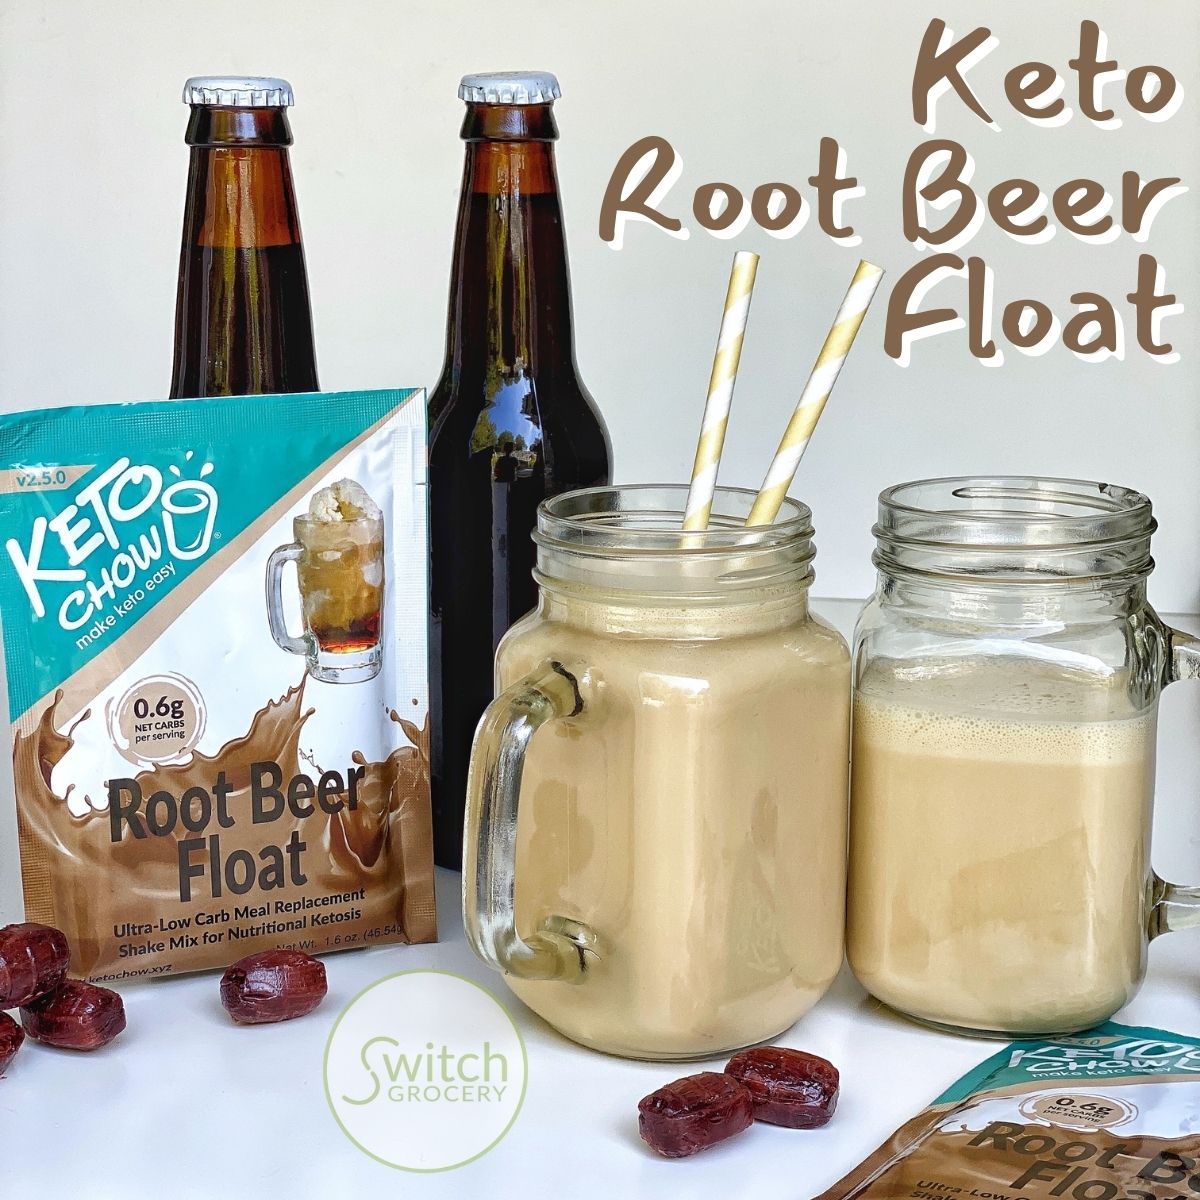 Keto Root Beer Float